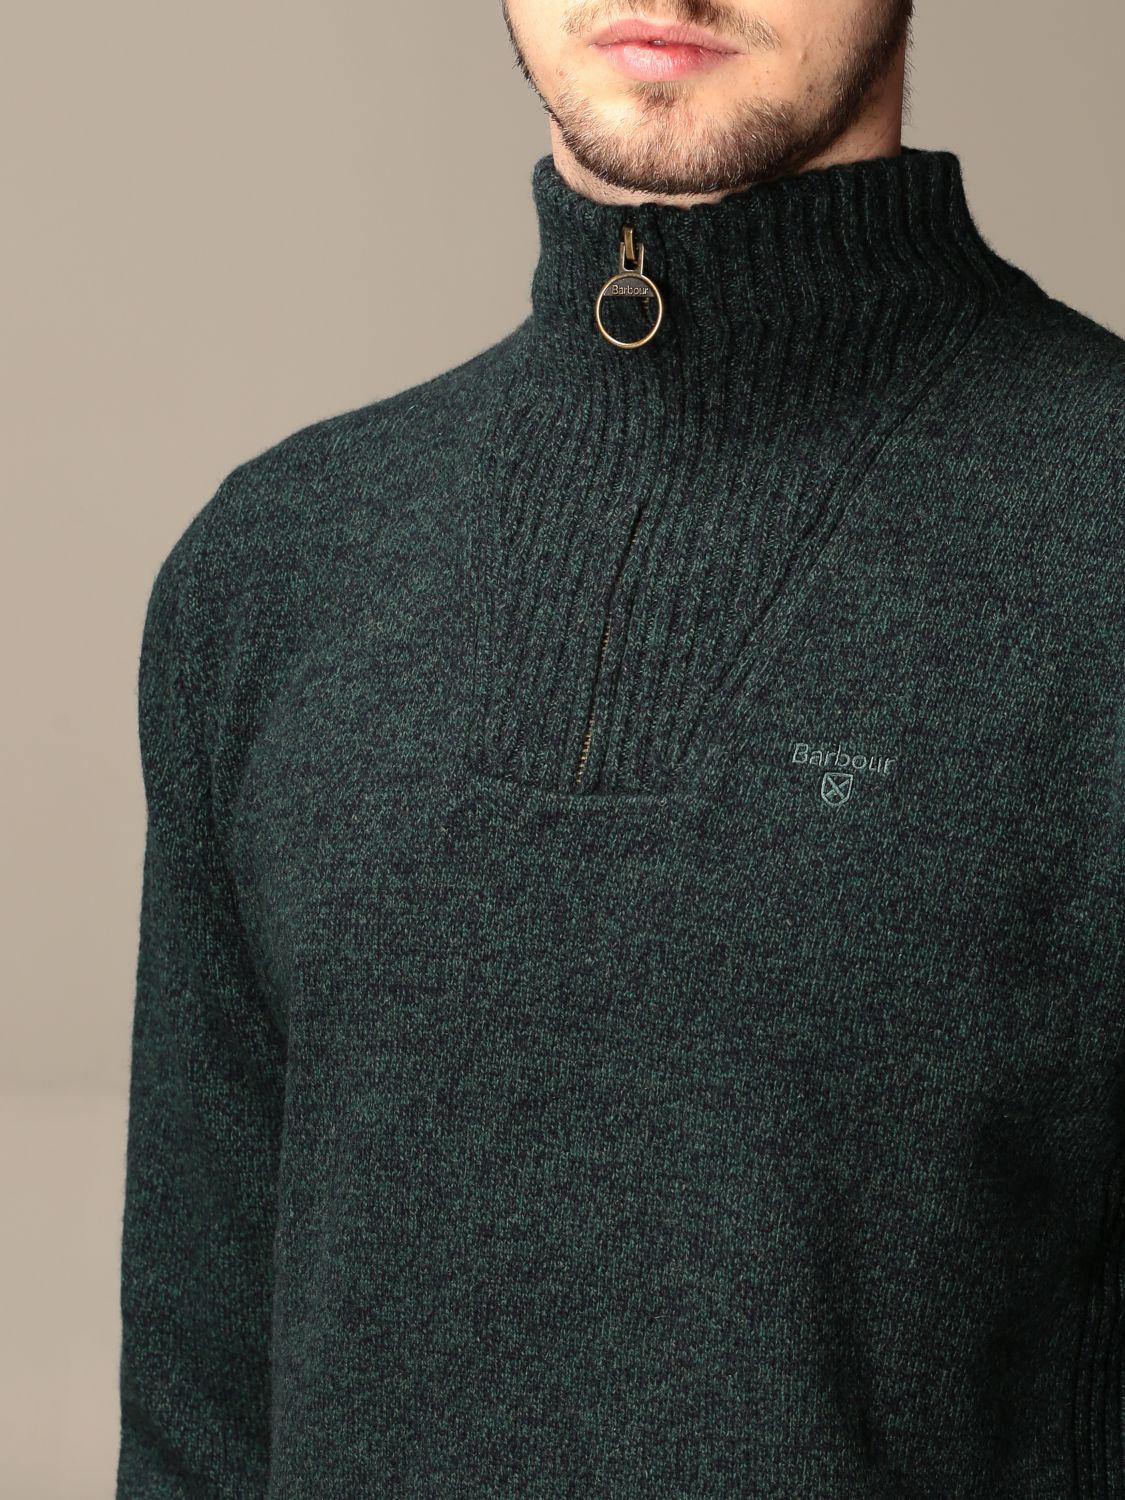 Sweater Barbour MKN0339 MKN Giglio EN